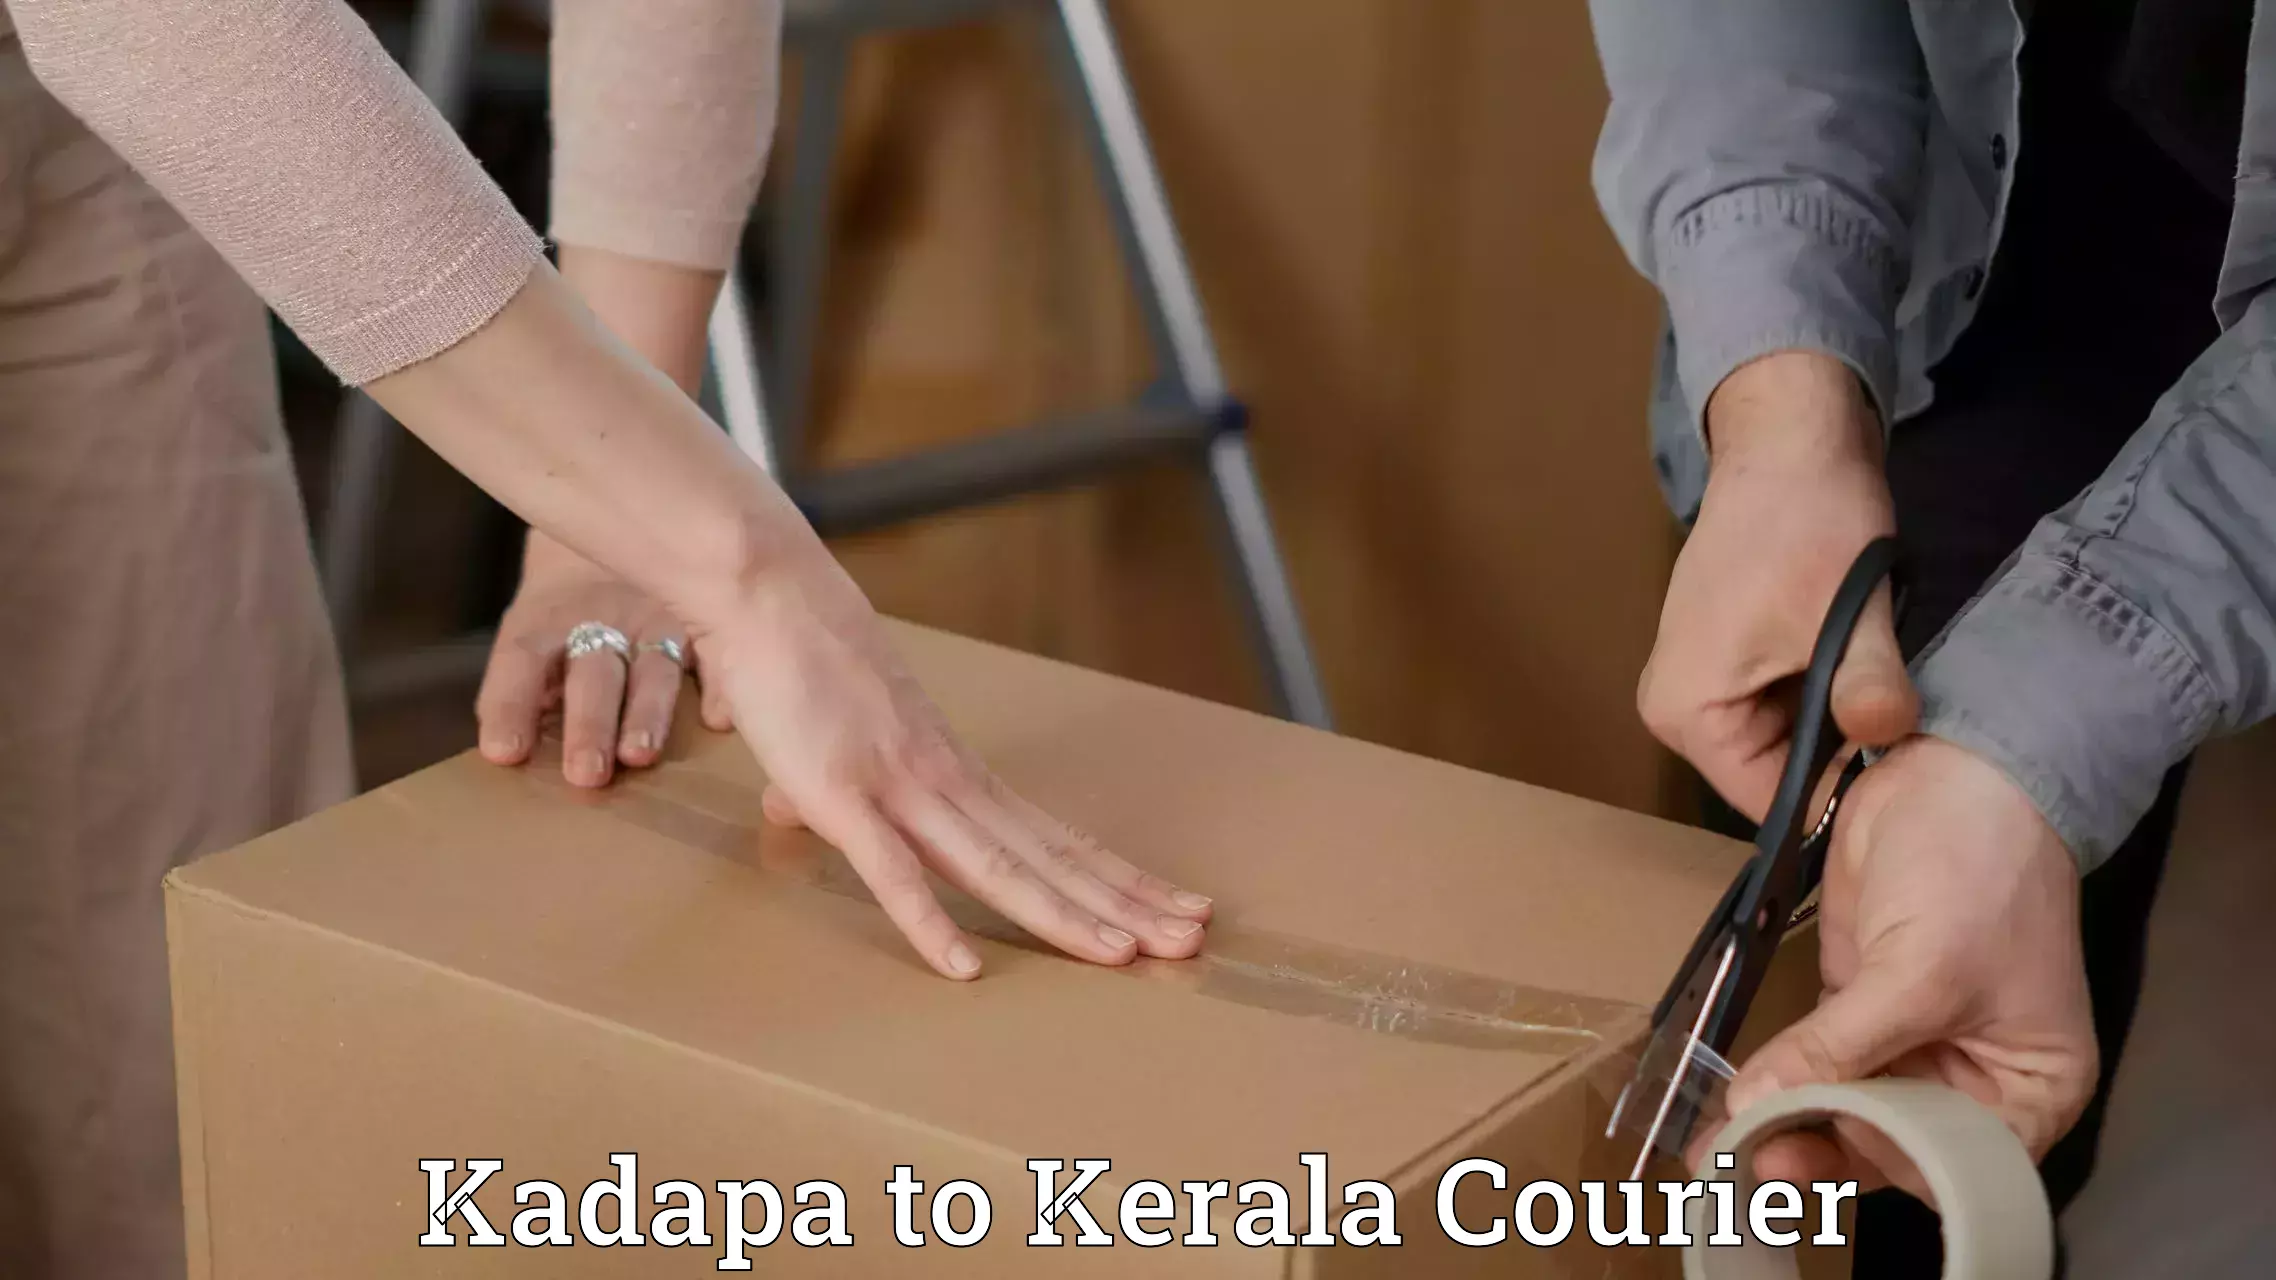 Local delivery service Kadapa to Kochi